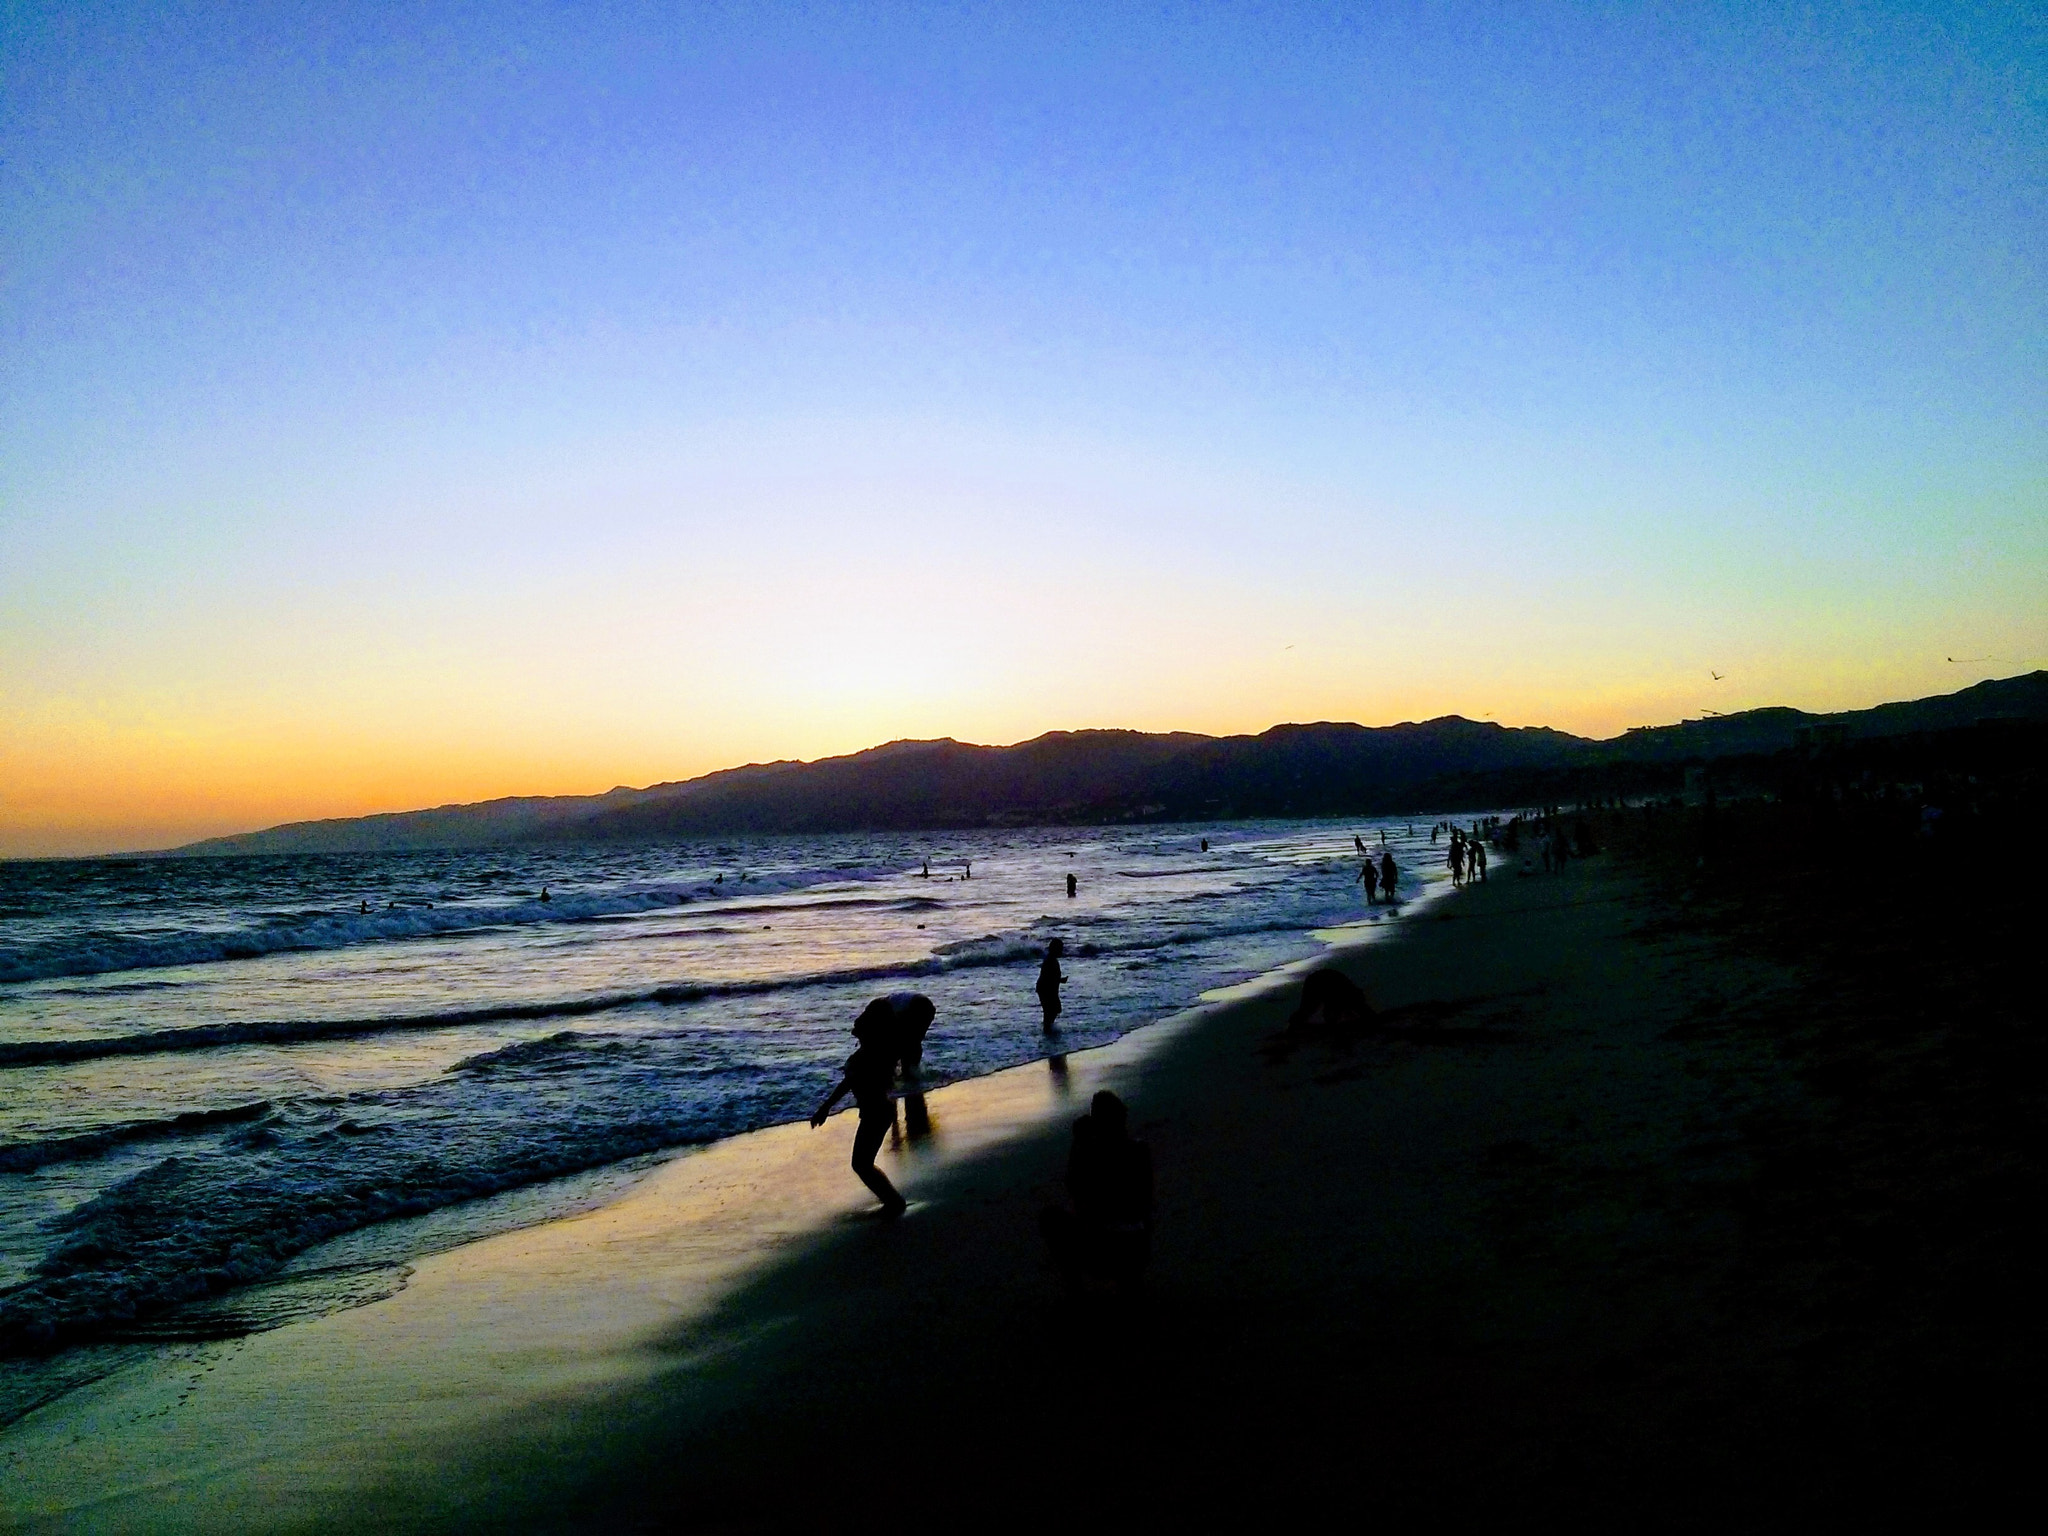 LG Nexus 4 sample photo. 2014 crooked sunset photography